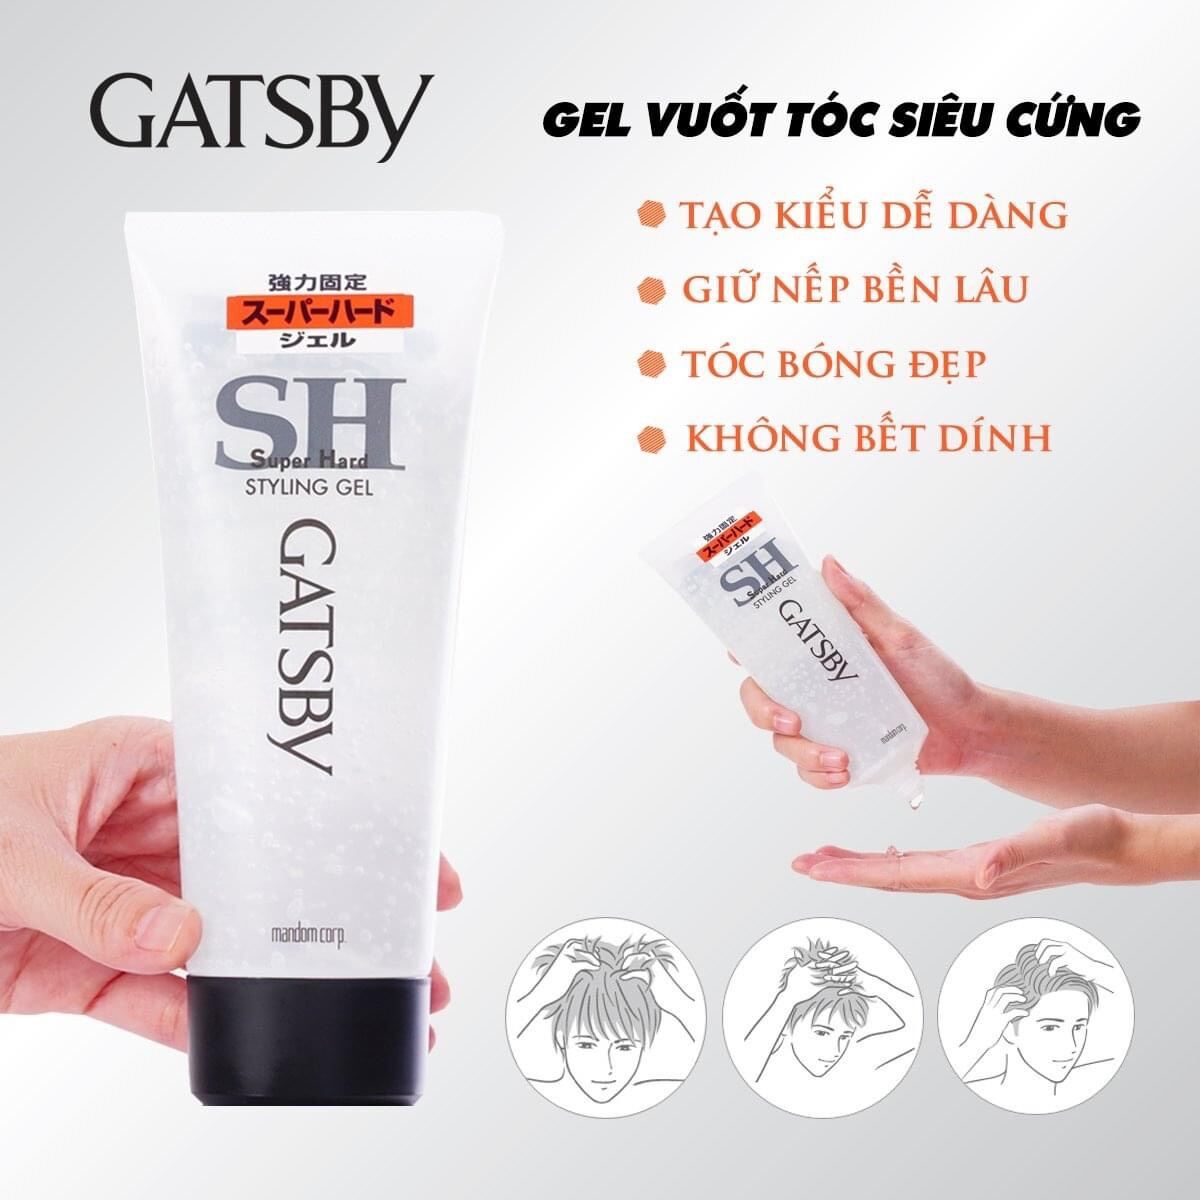 Gel vuốt tạo kiểu tóc nam Gatsby Styling Super Hard firm hold matte shine giữ nếp ngày dài không bết dính chứa vitamin dưỡng ẩm (Nhật Bản) giá rẻ